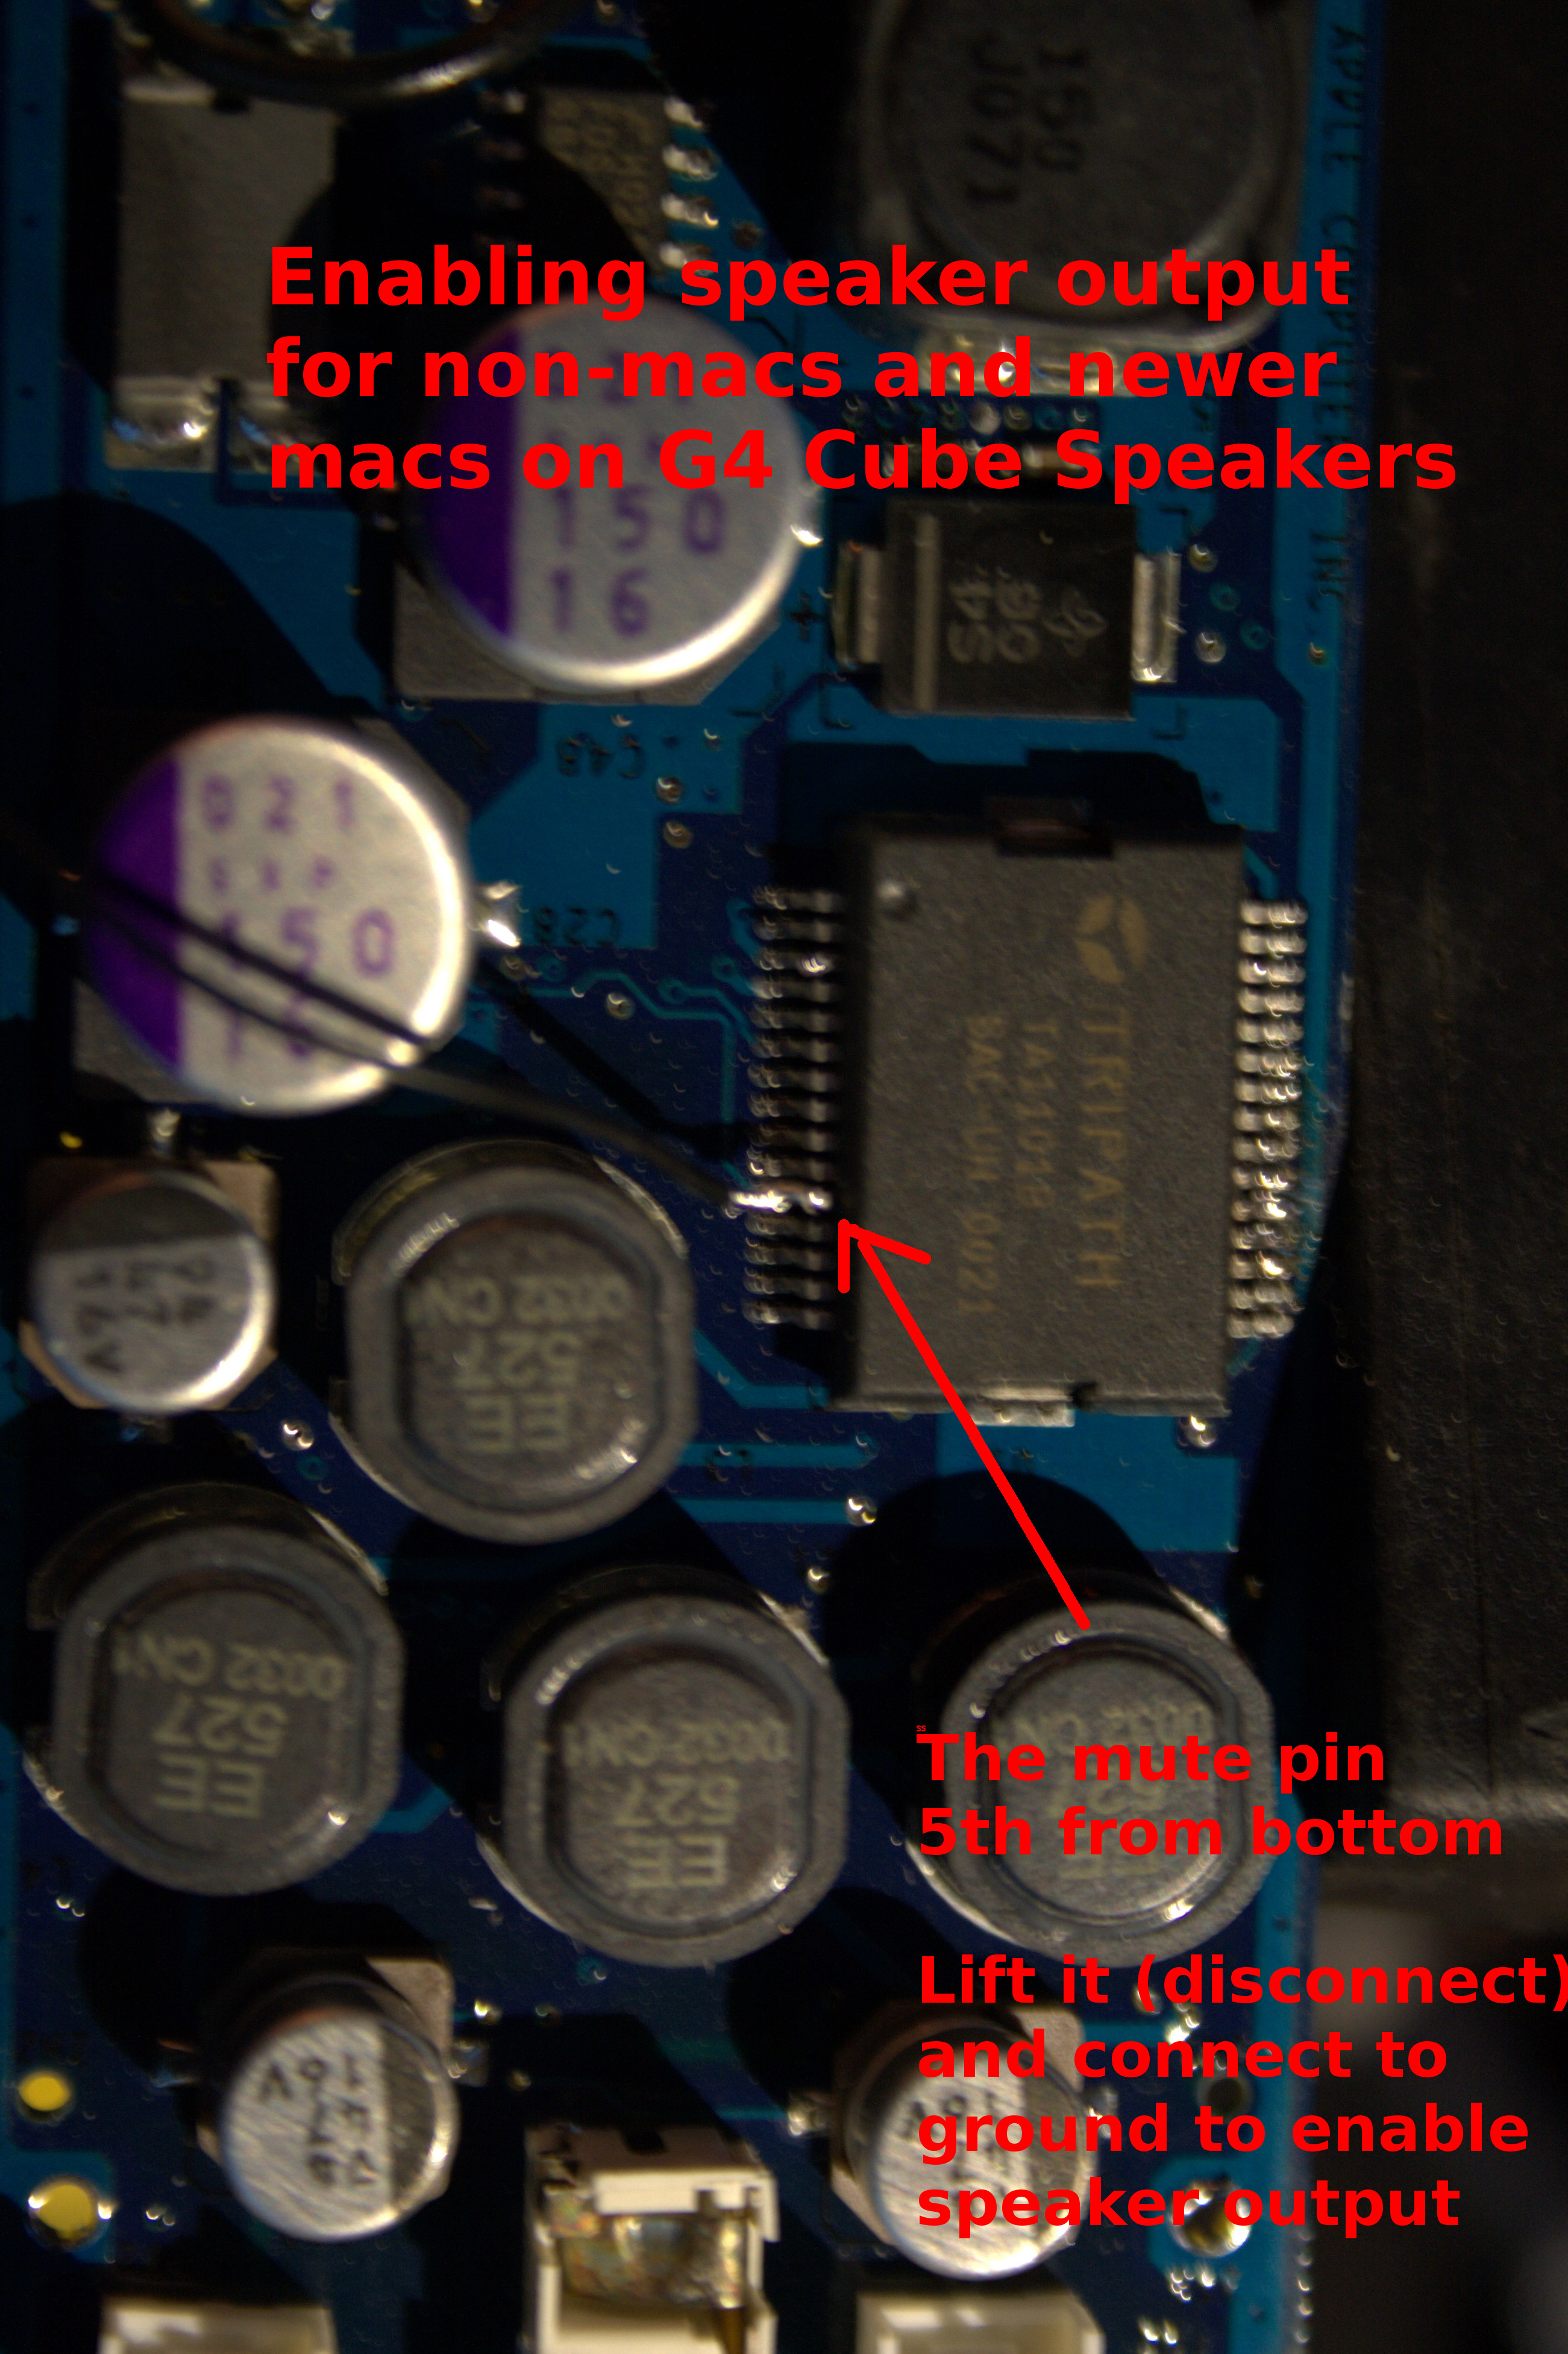 File:G4 cube speaker lifted pin.jpg